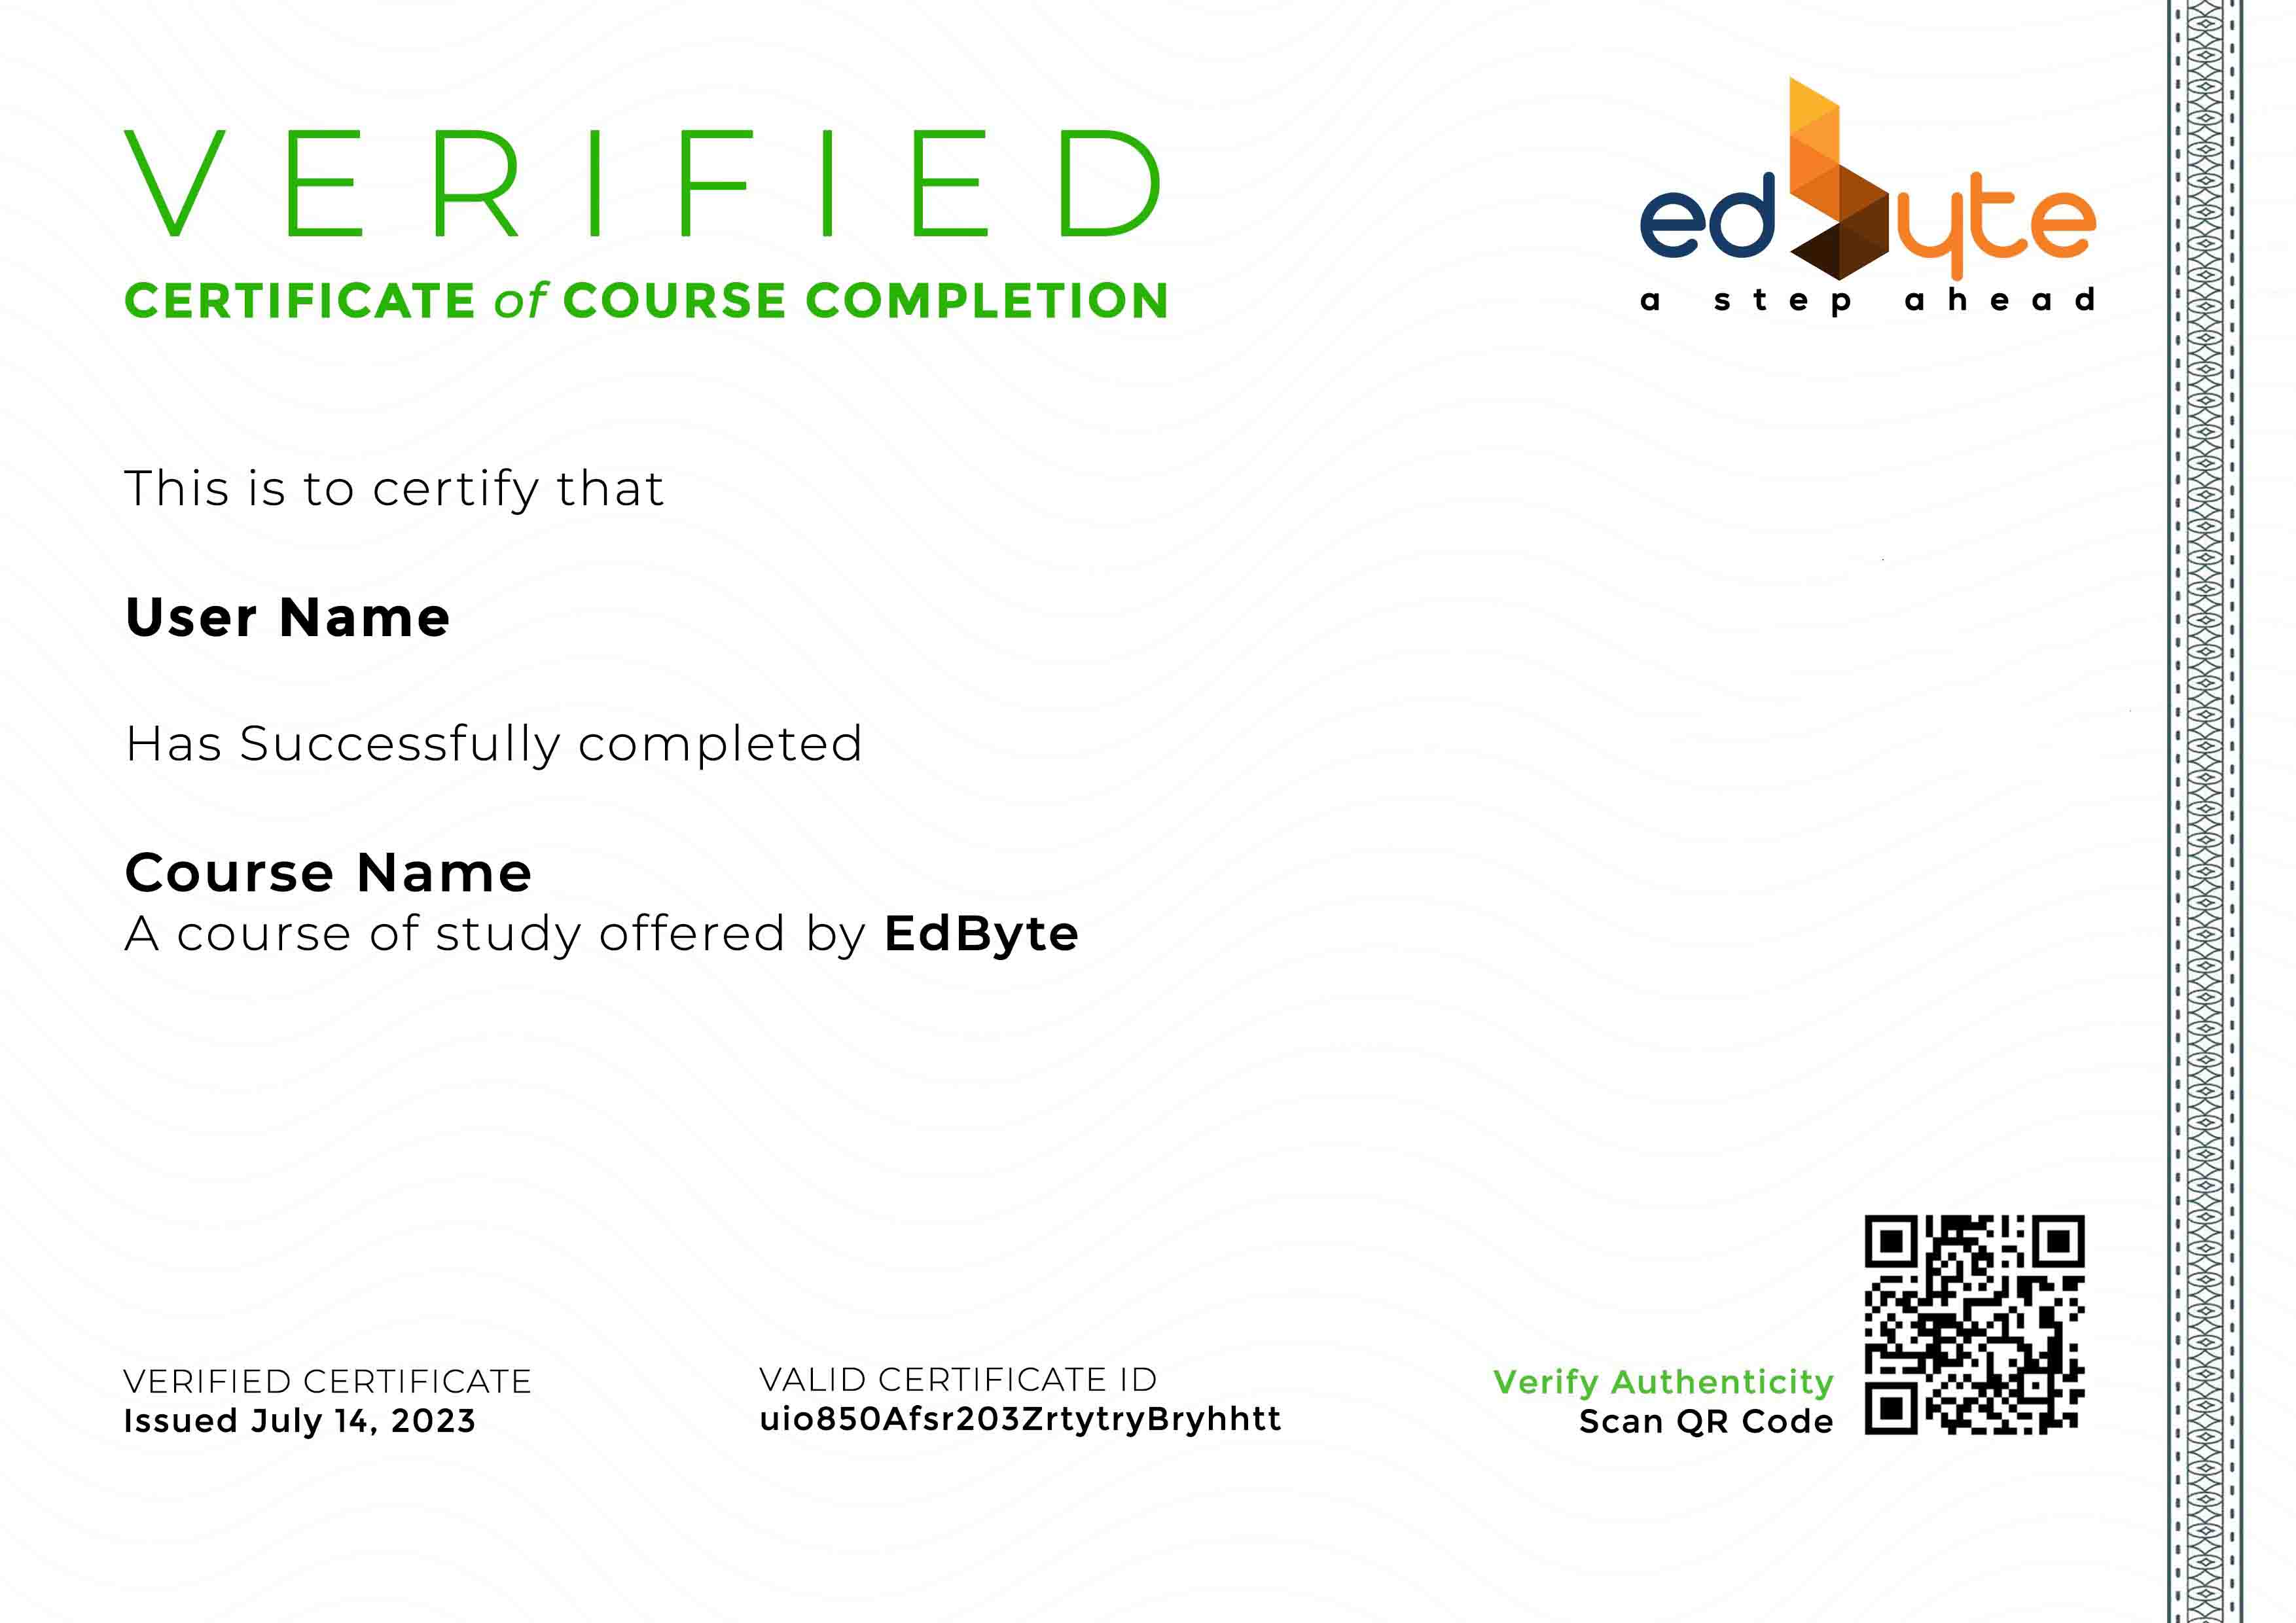 edbyte certificate